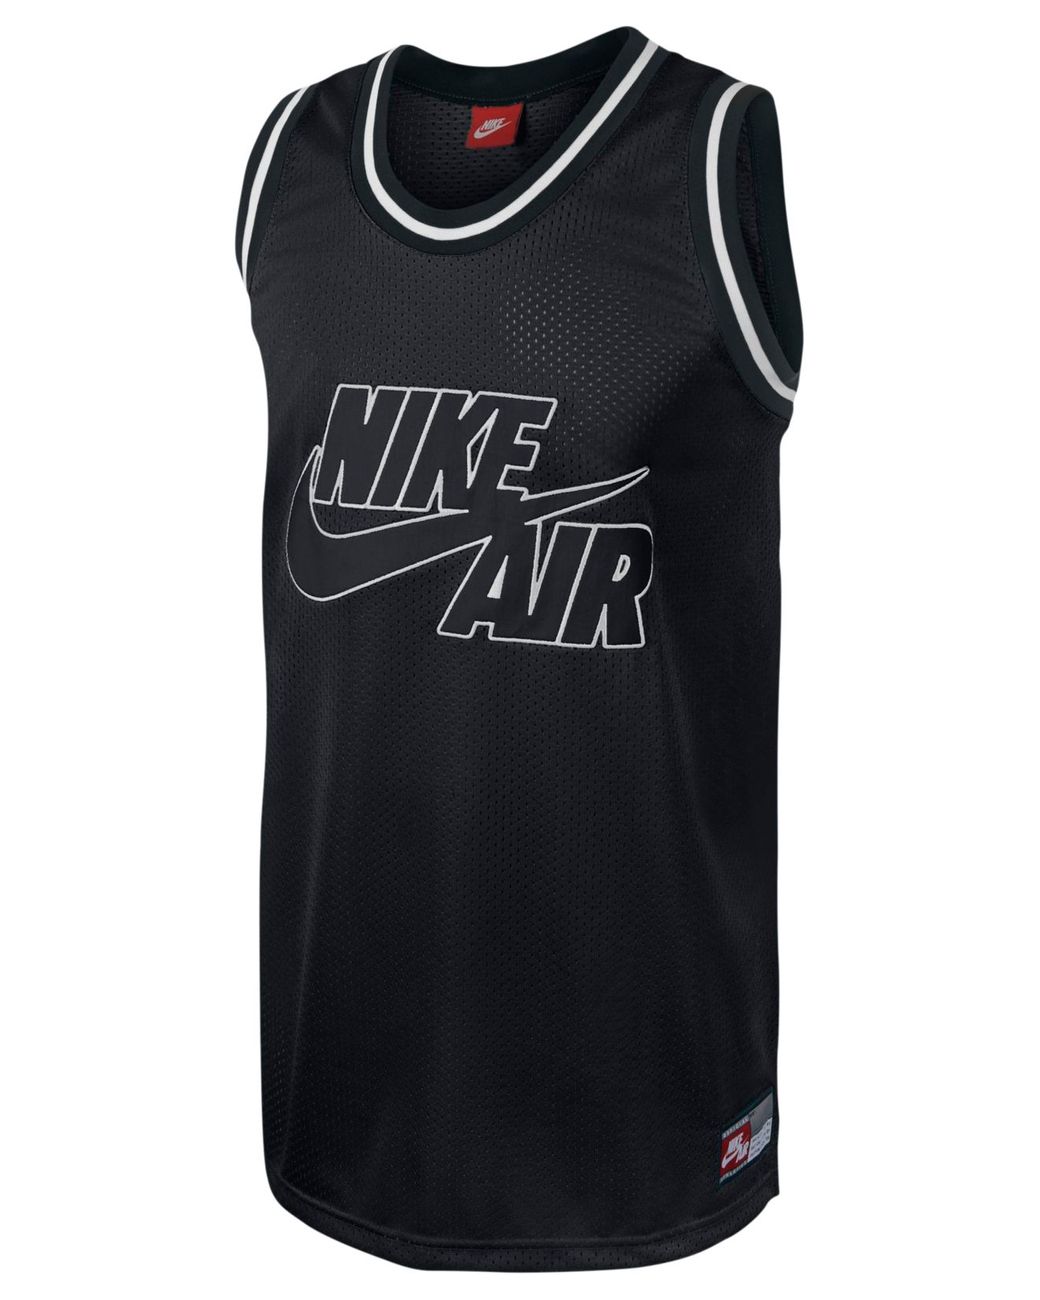 Nike Basketball Jersey Basketball w/Swoosh Logo Black/Blue/Gray Men's Size  L